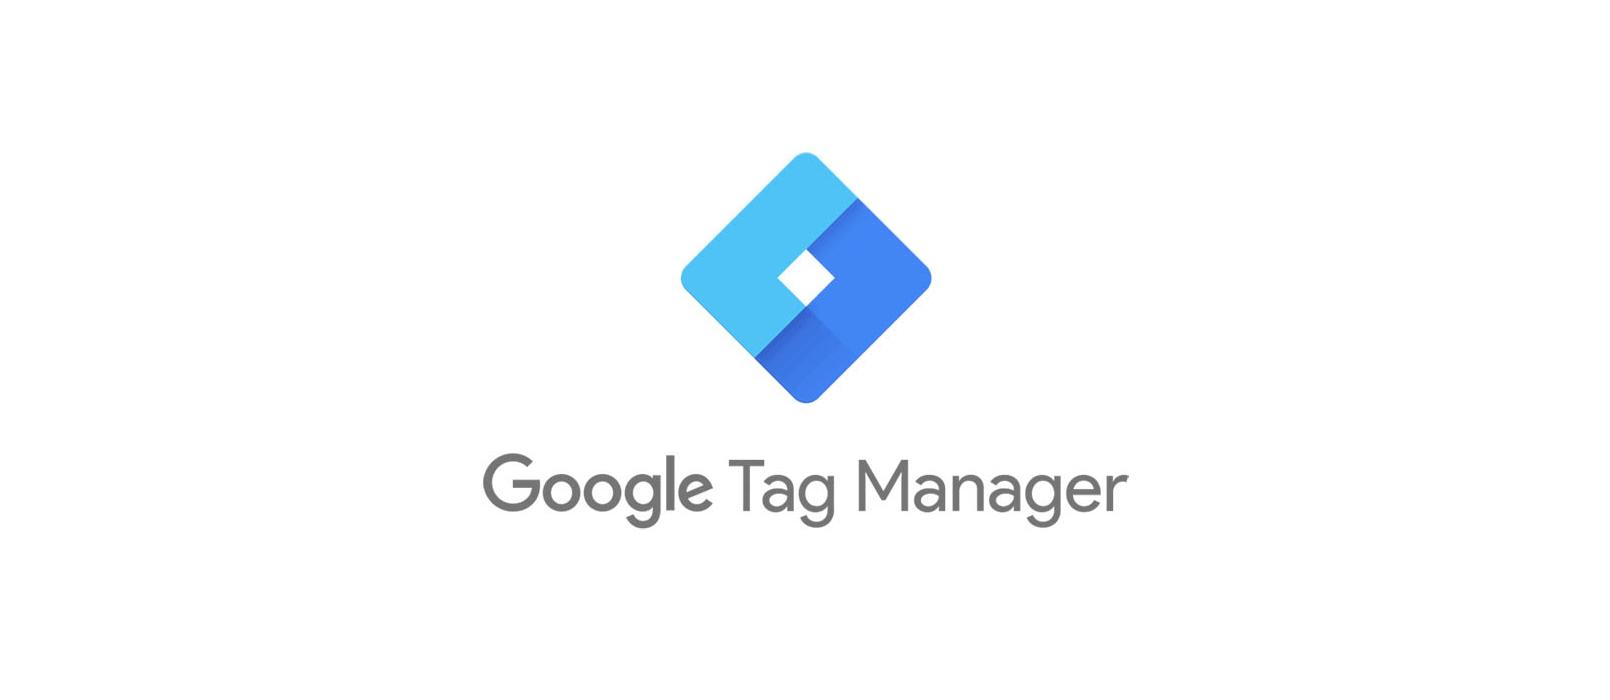 Czym jest Google Tag Manager (GTM)? - jak korzystać i konfigurować menedżera tagów